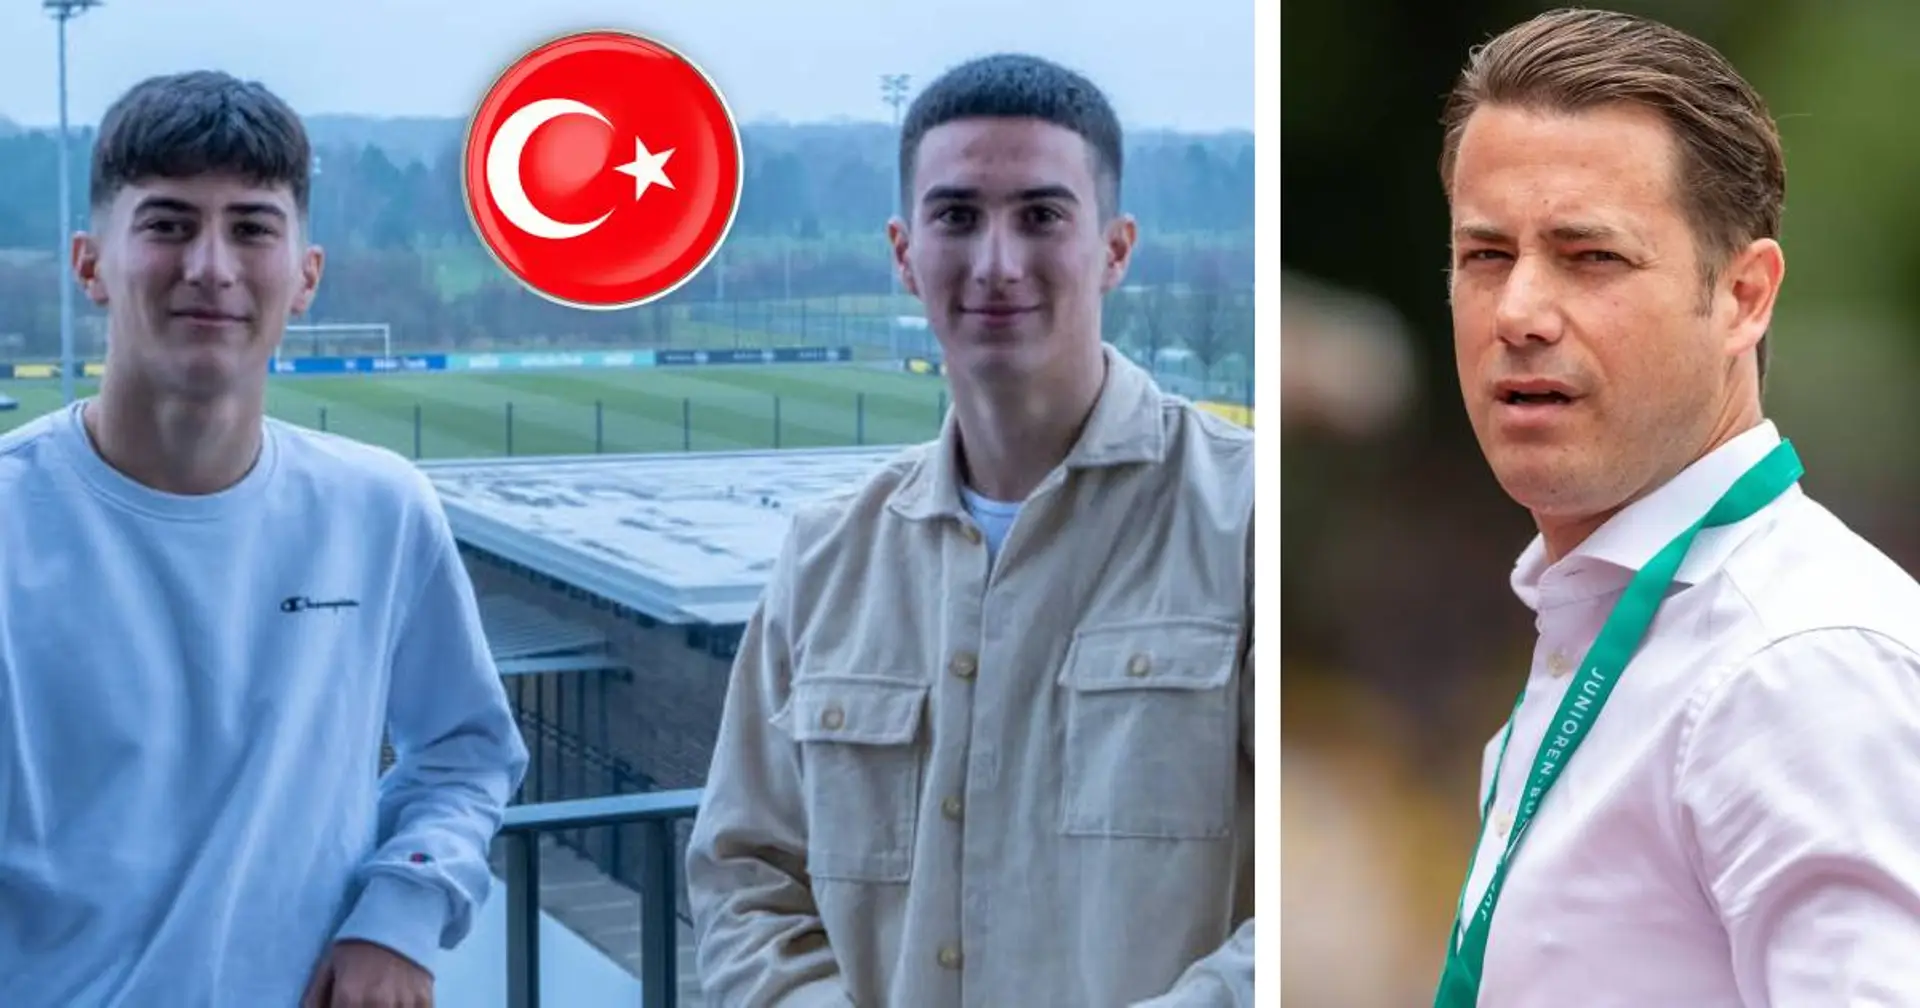 Nach Göktan Gürpüz verlässt offenbar auch sein jüngerer Bruder Gökdeniz den BVB